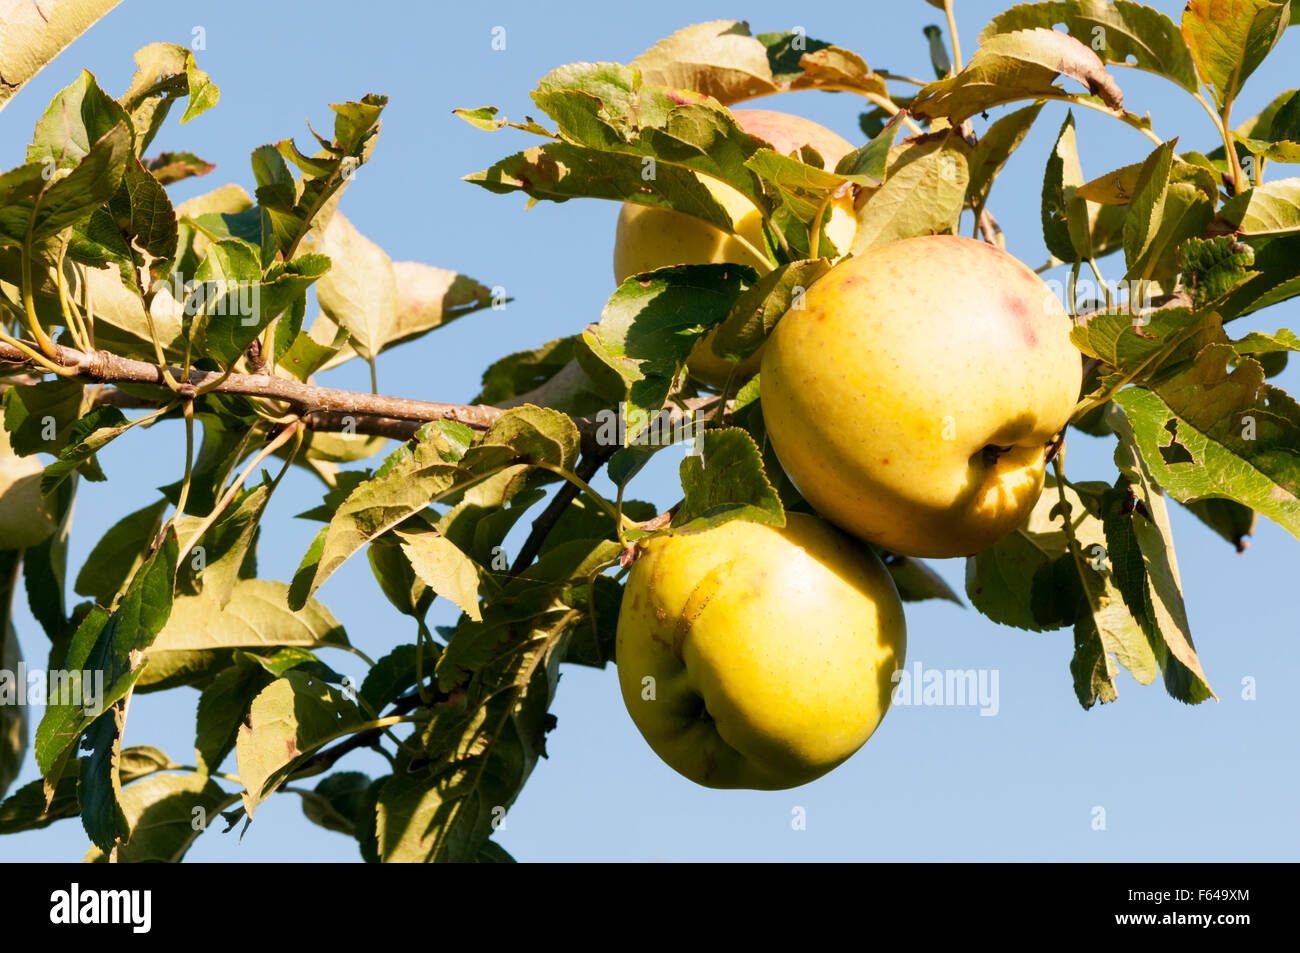 Les pommes de la variété Golden Delicious Starkspur poussant sur un arbre. Banque D'Images